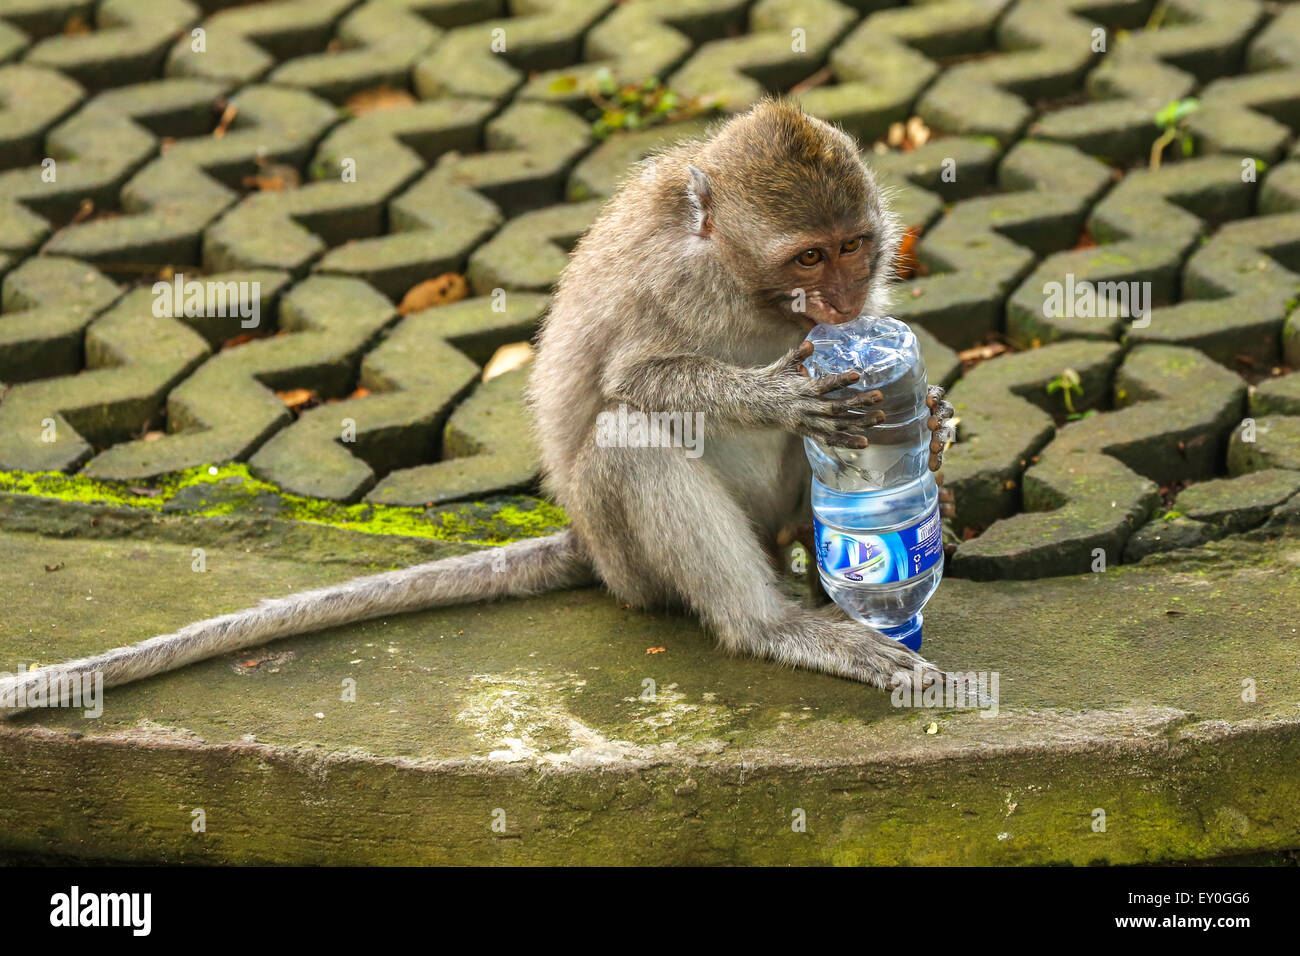 Piccolo marrone monkey giocando con una bottiglia di plastica di acqua mentre seduto. L'immagine orizzontale. Foto Stock